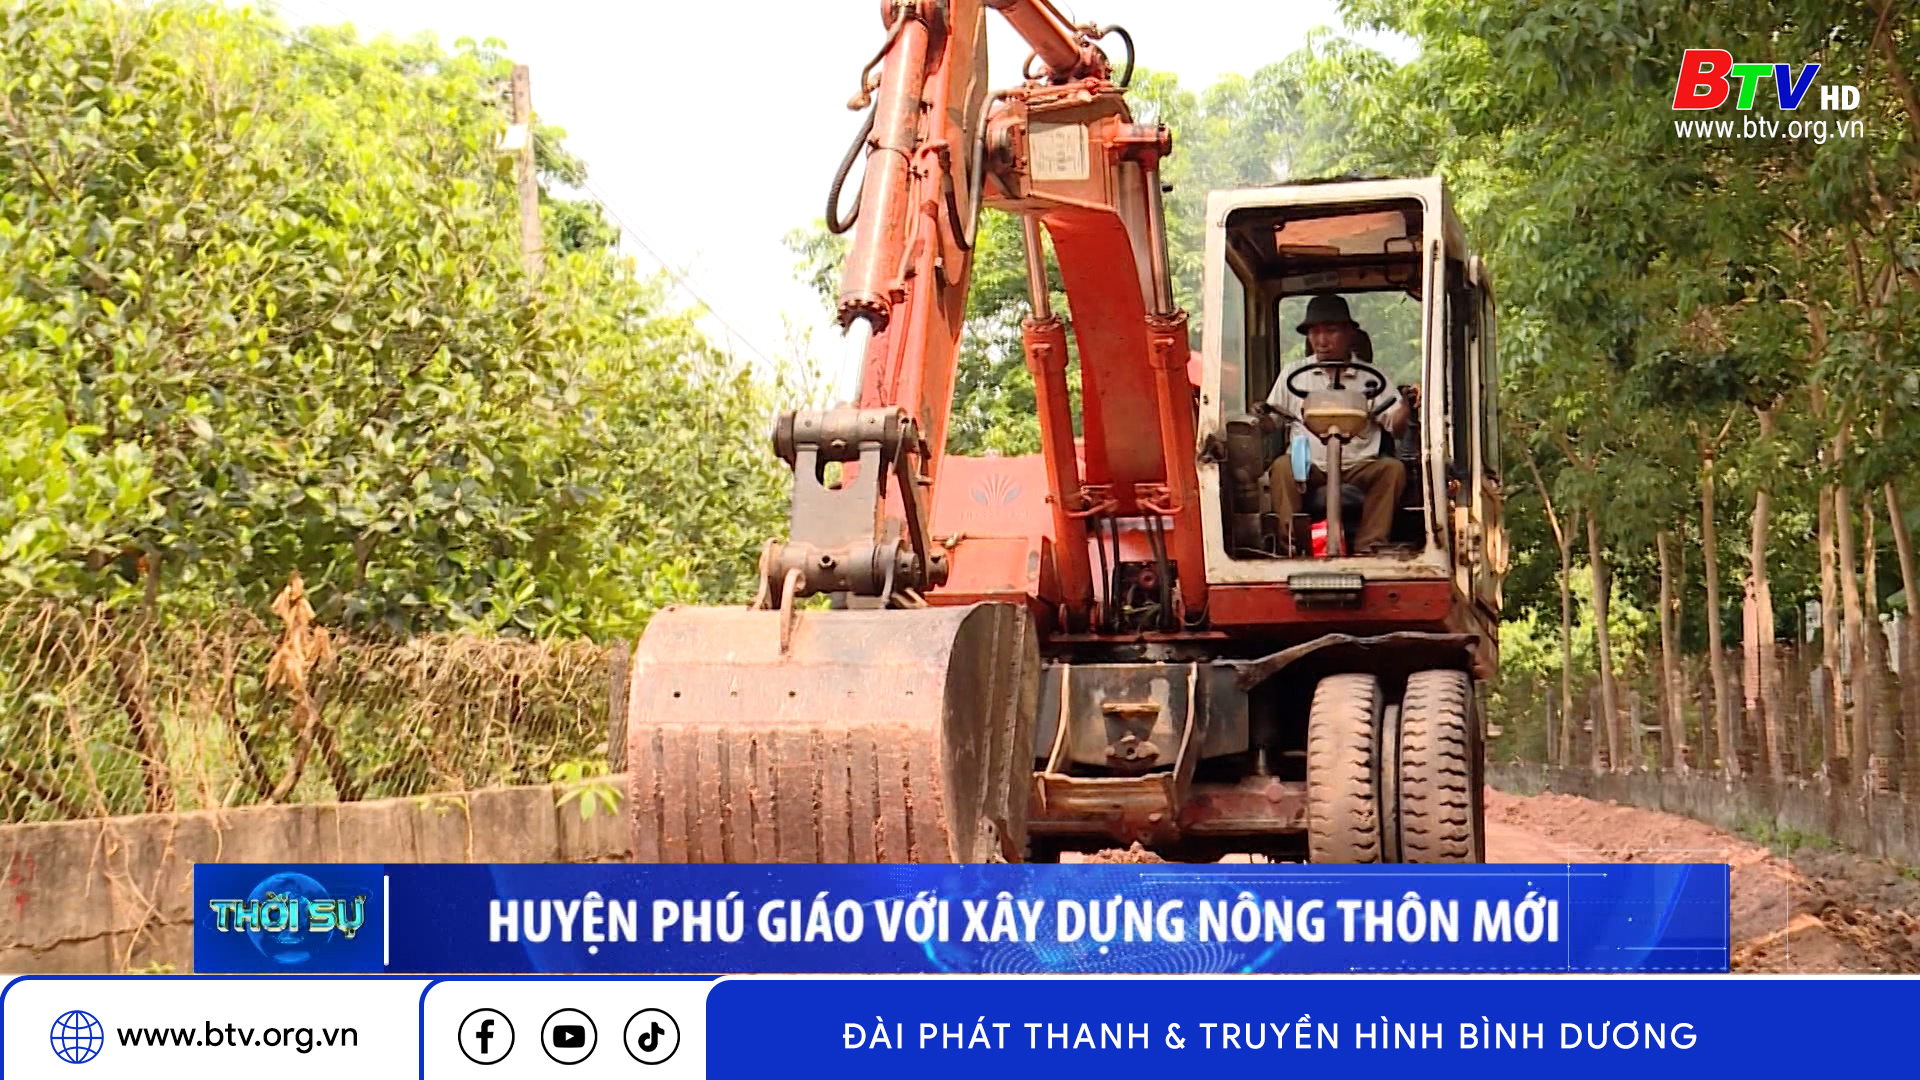 Huyện Phú Giáo với xây dựng nông thôn mới